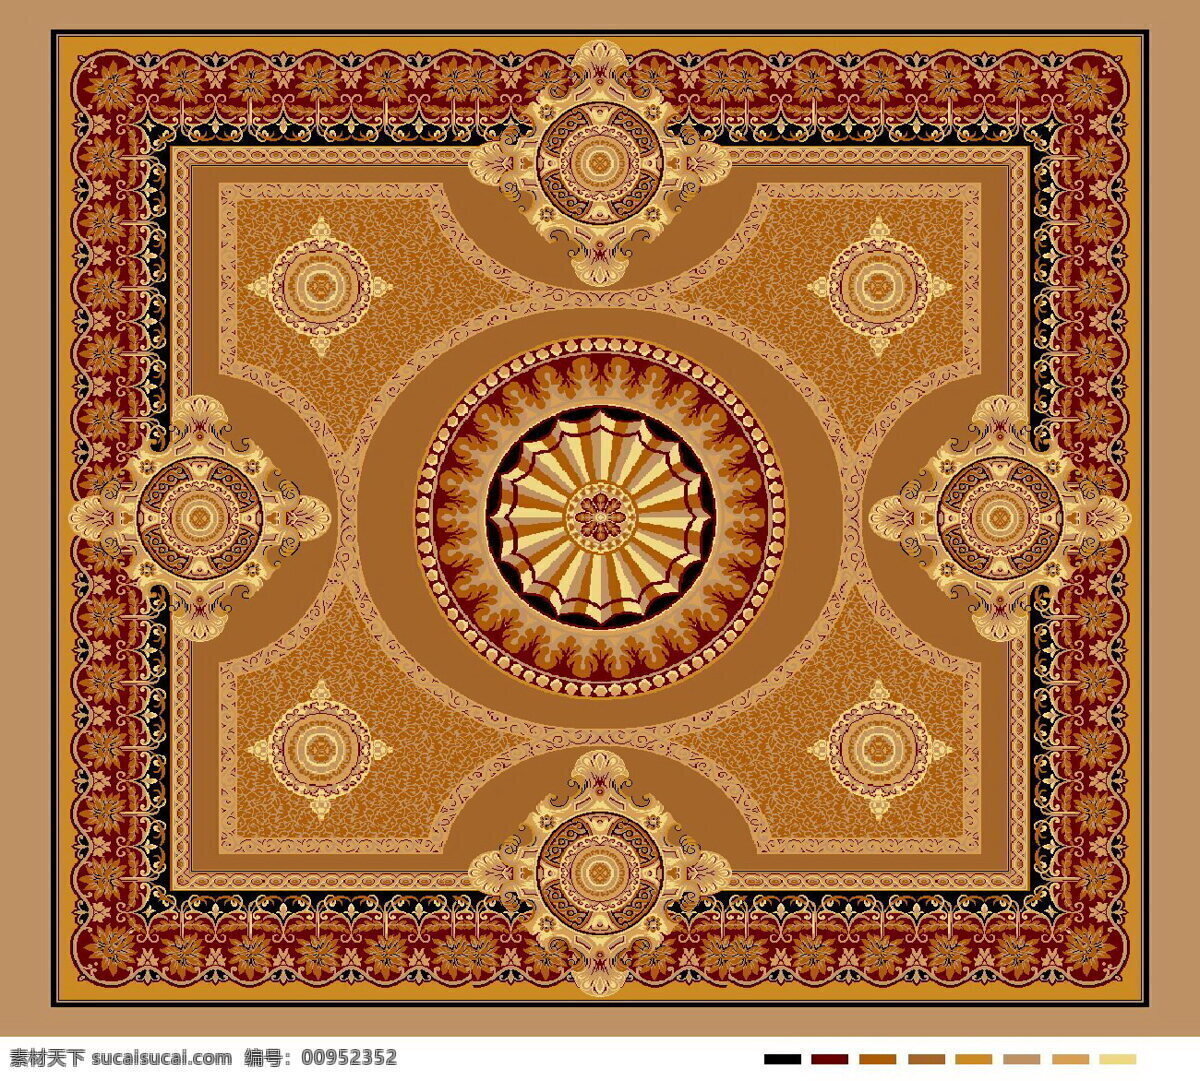 欧式 大 宴会厅 地毯 设计图 矢量图 日常生活